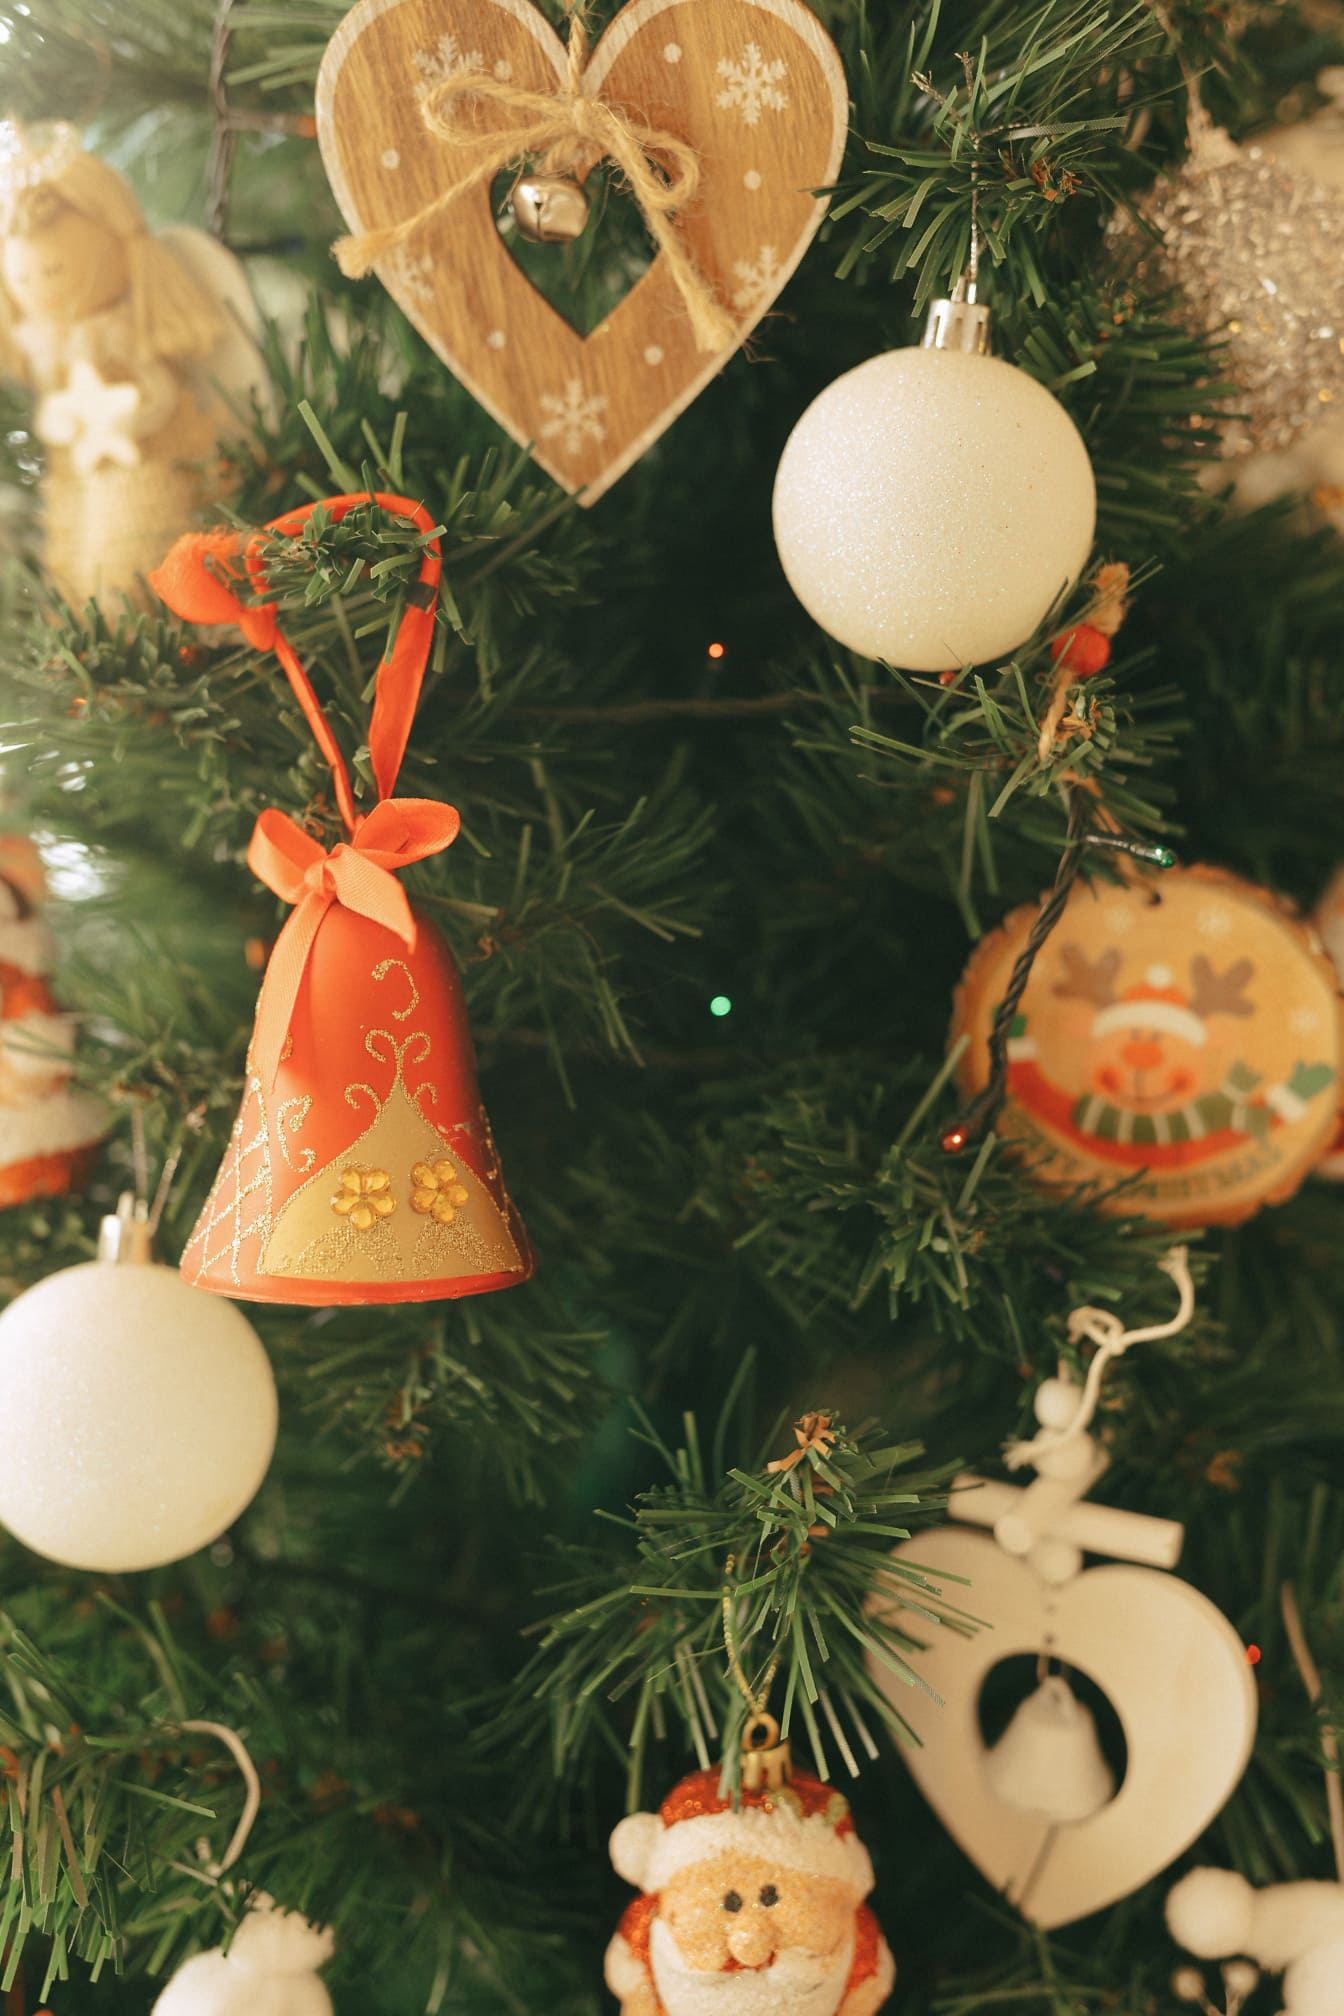 하트와 종과 산타 클로스 모양의 구식 장식품이있는 크리스마스 트리